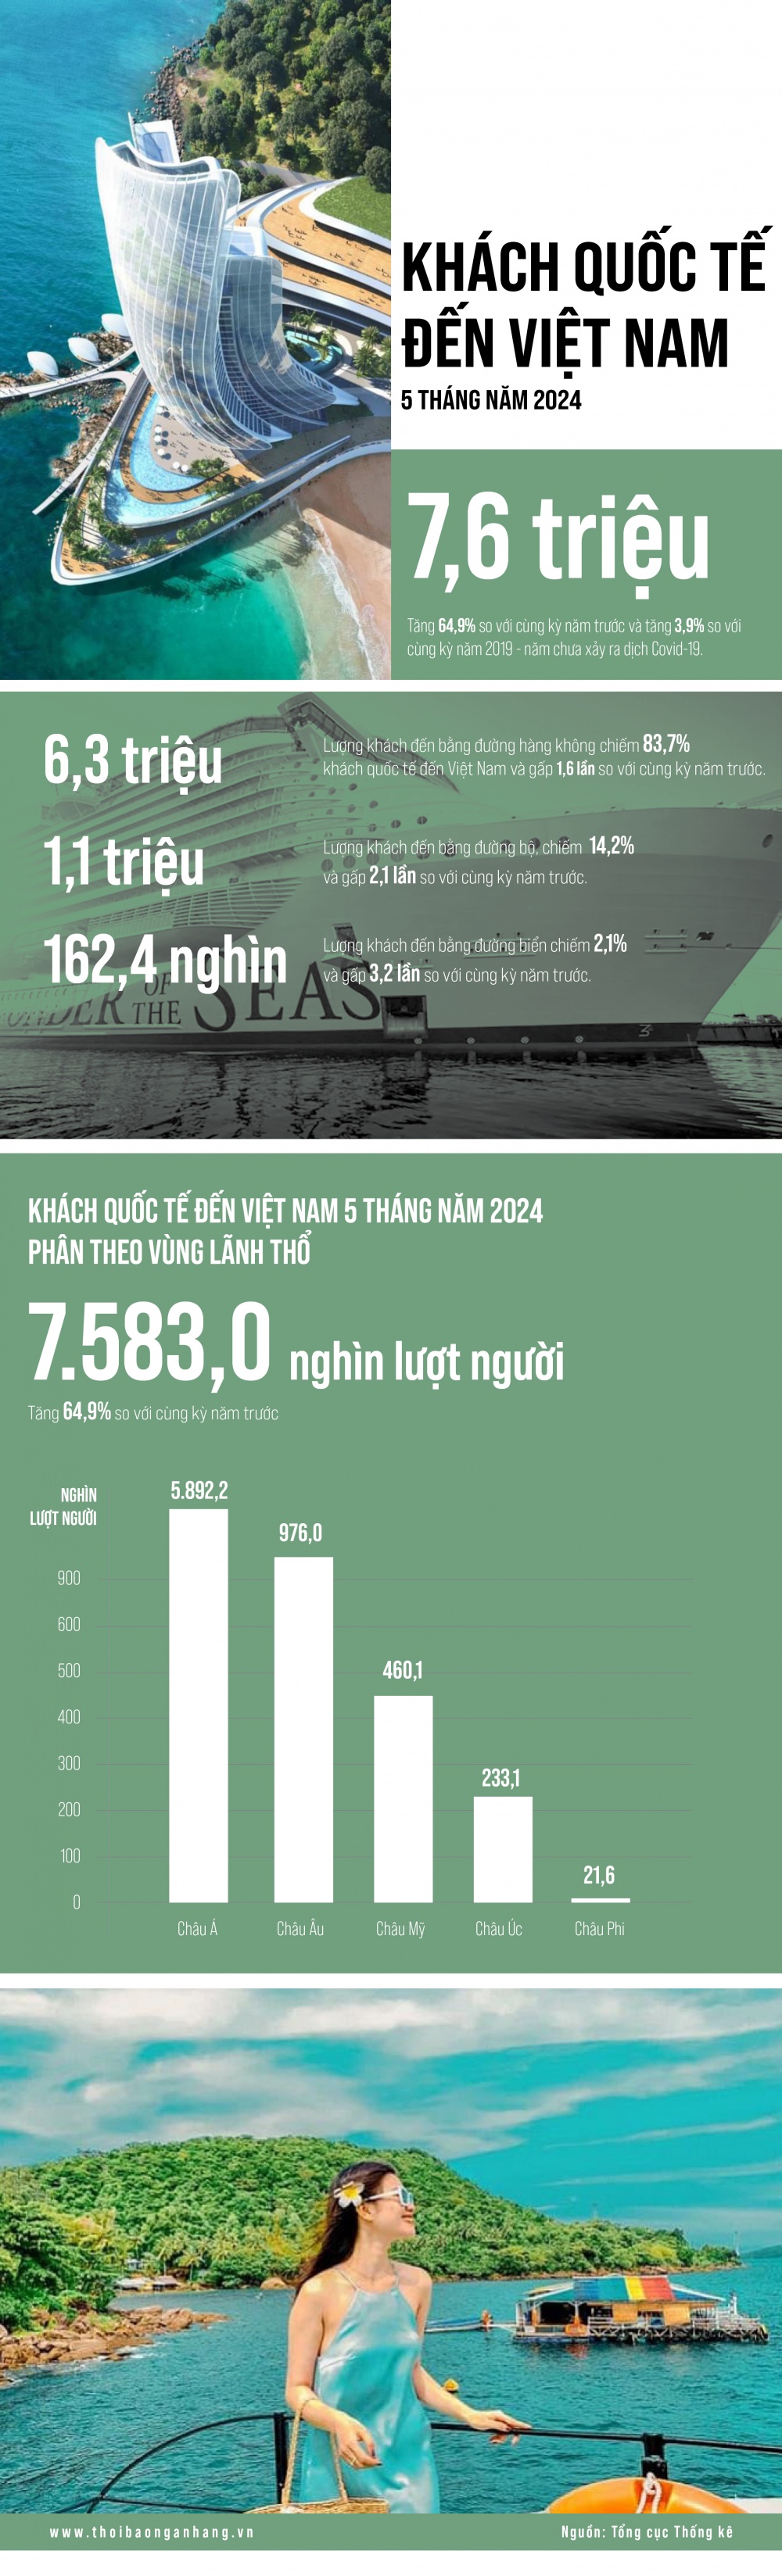 [Infographic] Khách quốc tế đến Việt Nam 5 tháng đầu năm 2024